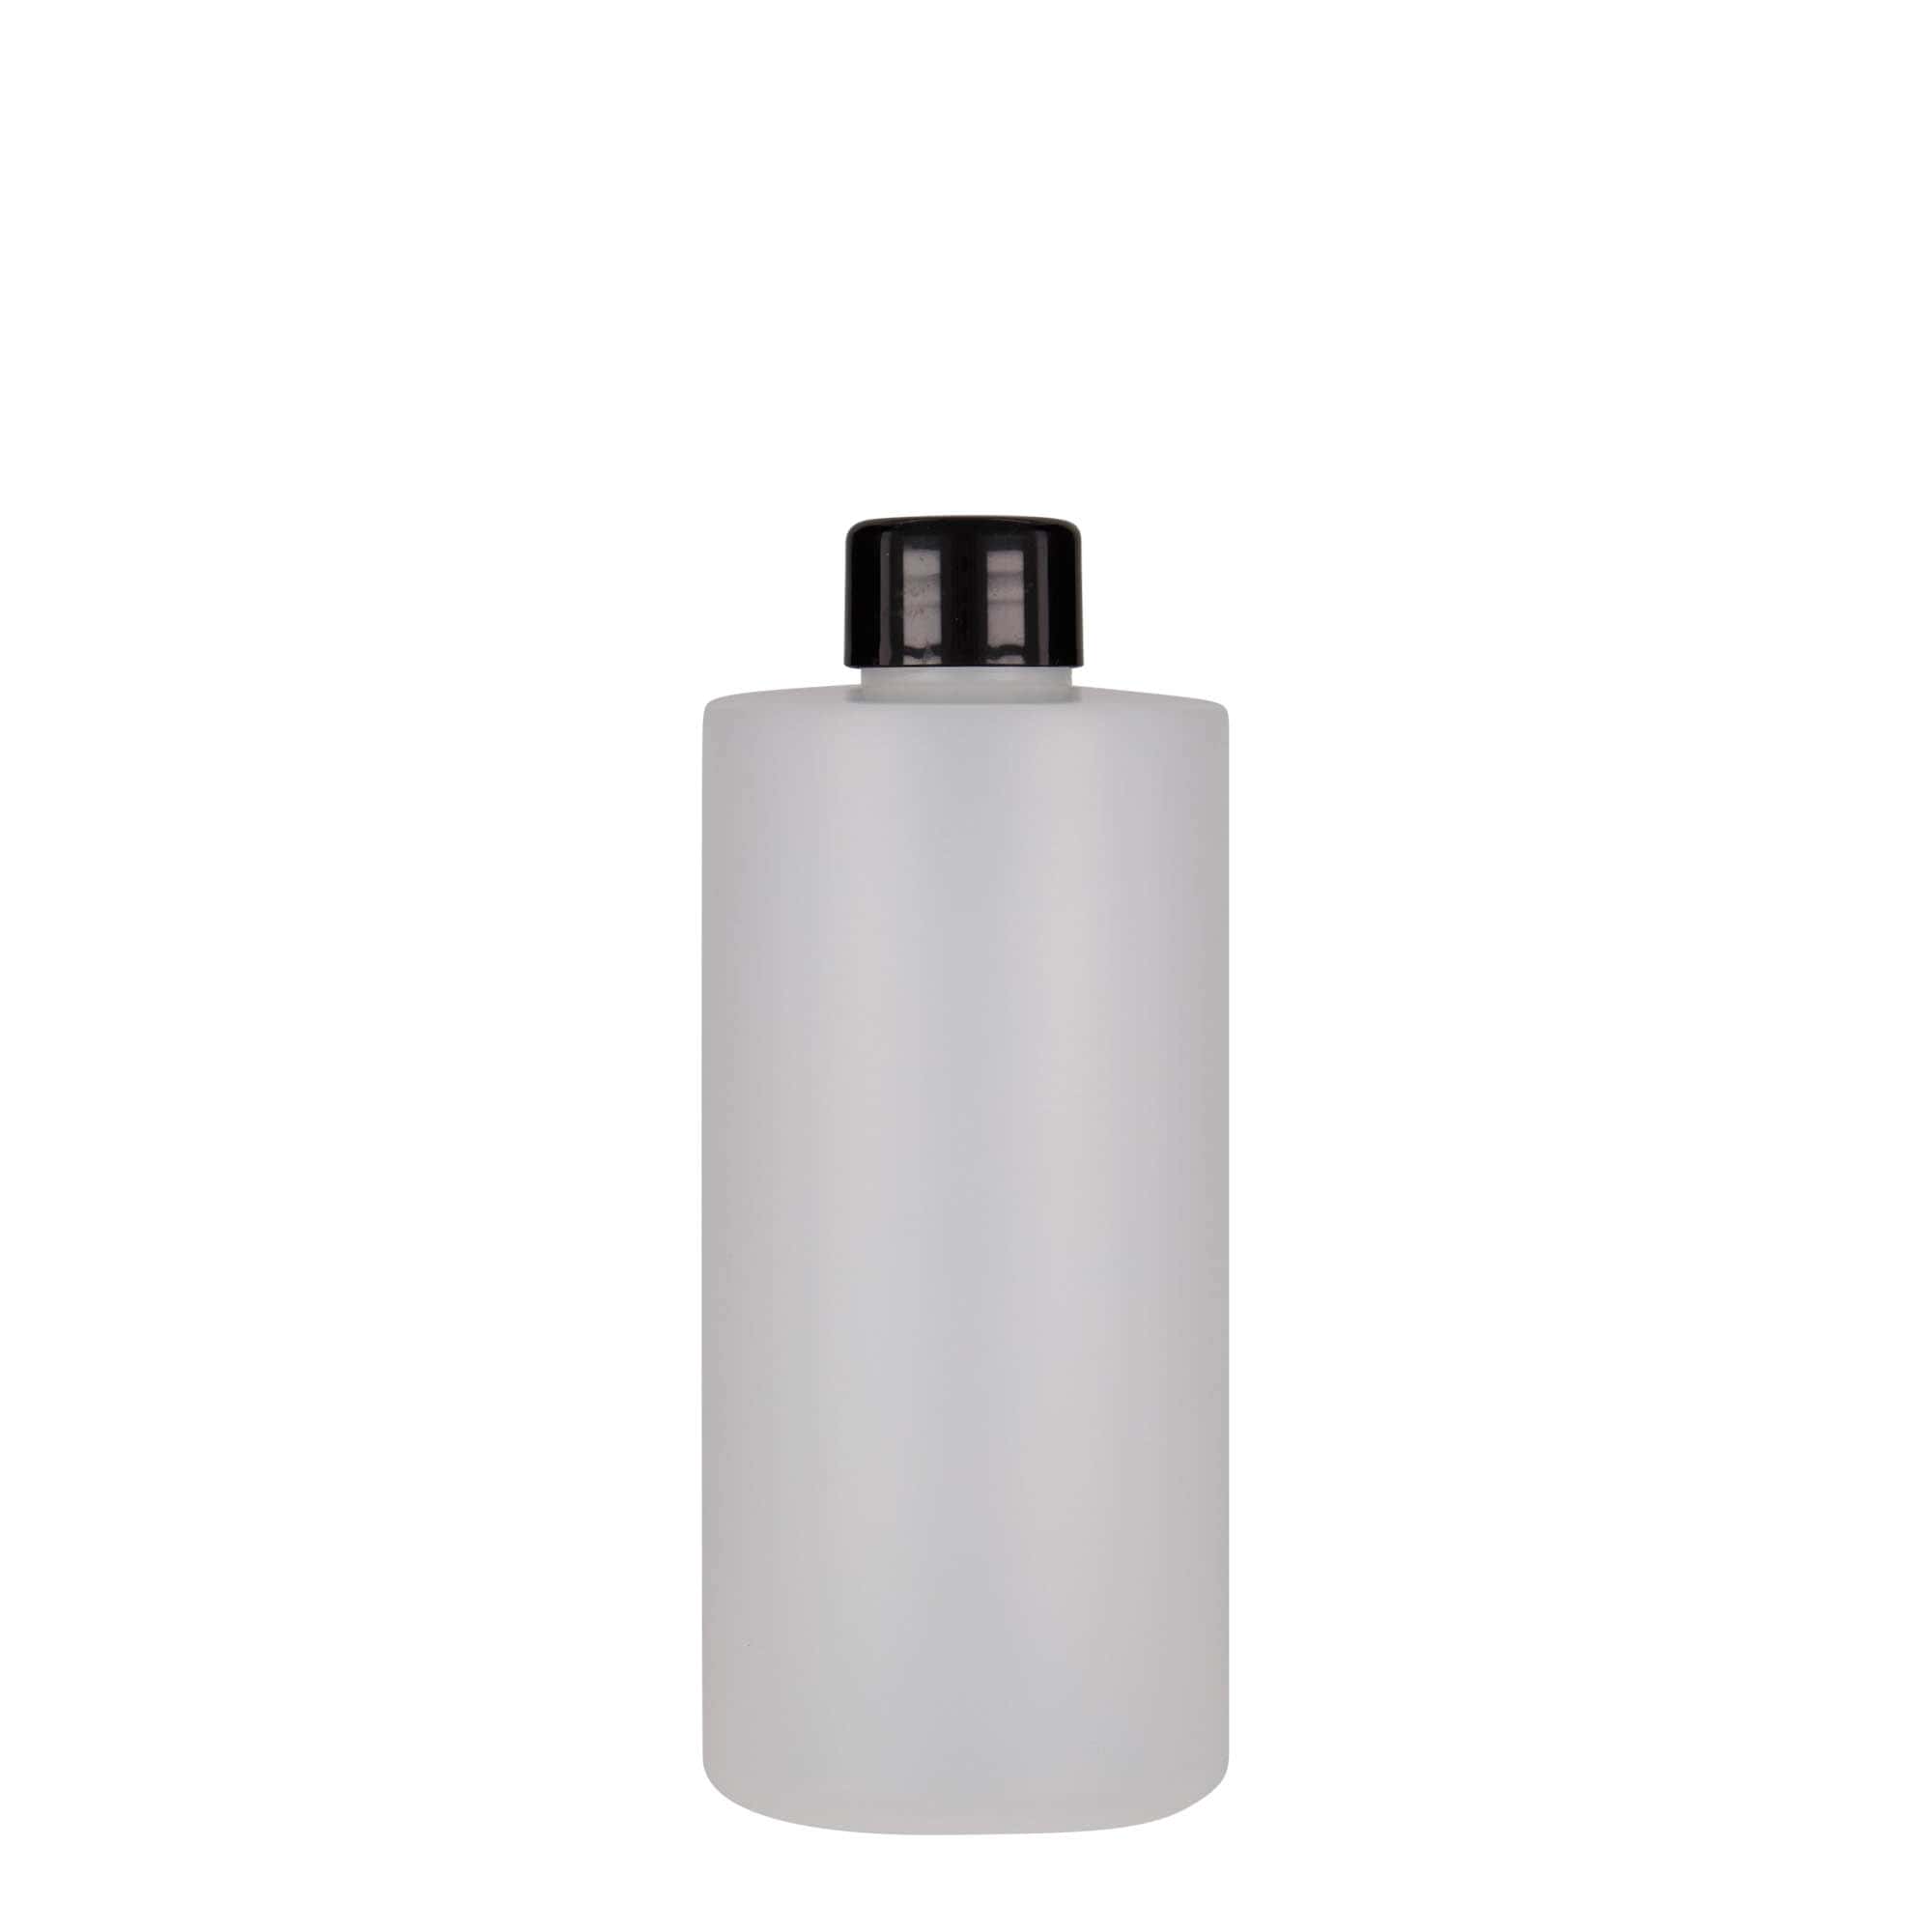 300 ml-es műanyag palack 'Pipe', HDPE, fehér, szájnyílás: GPI 24/410